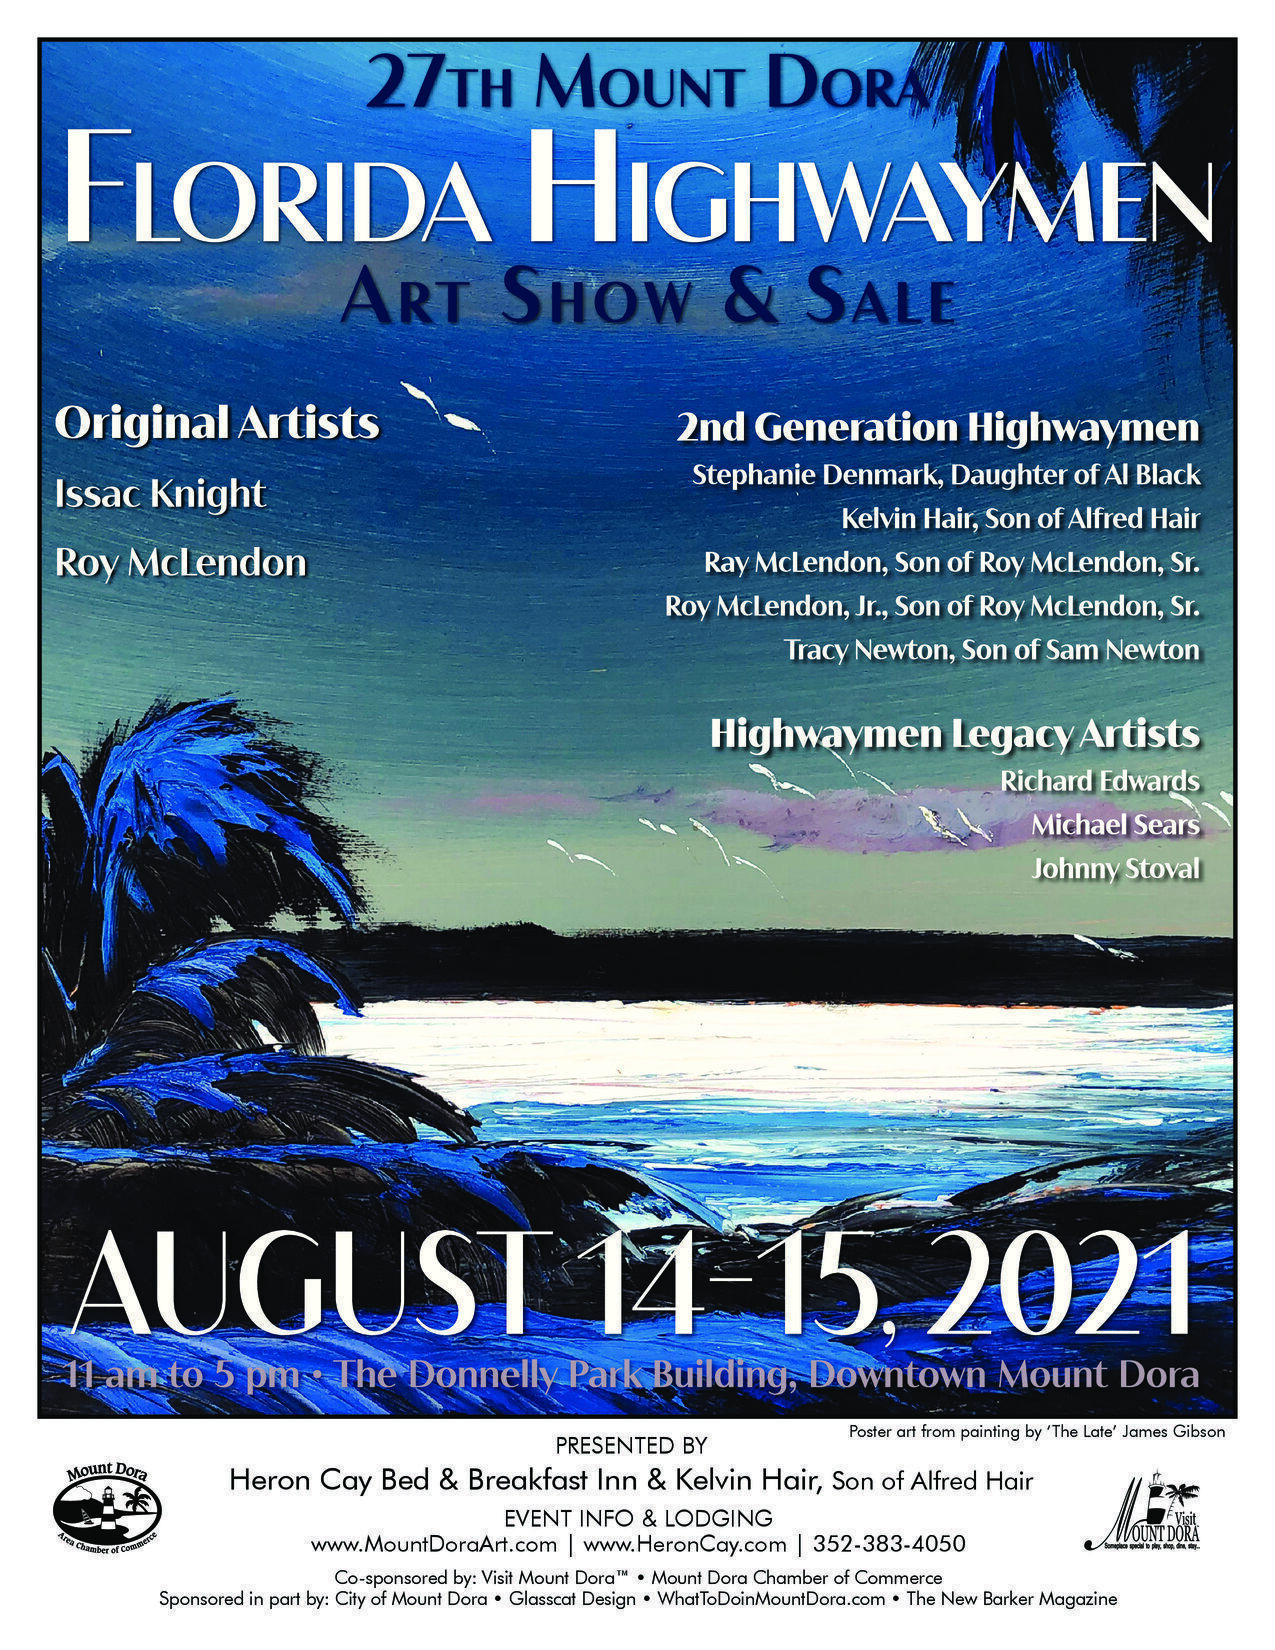 Florida Highwaymen Artists in Mount Dora Go Mount Dora